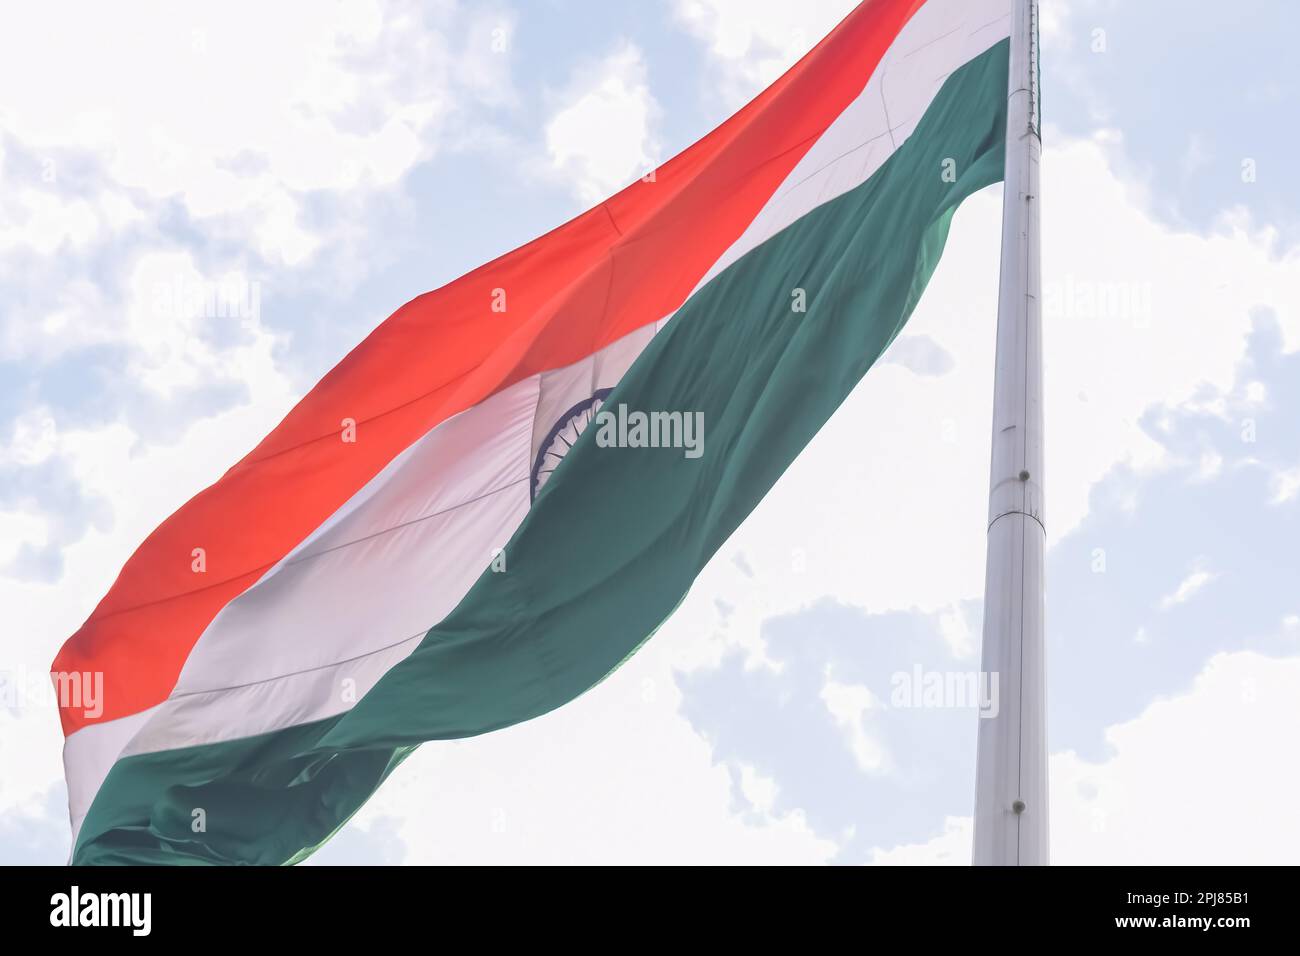 Die indische Flagge fliegt hoch am Connaught Place mit Stolz am blauen Himmel, die indische Flagge flattert, die indische Flagge am Unabhängigkeitstag und am Tag der Republik Indien, ti Stockfoto